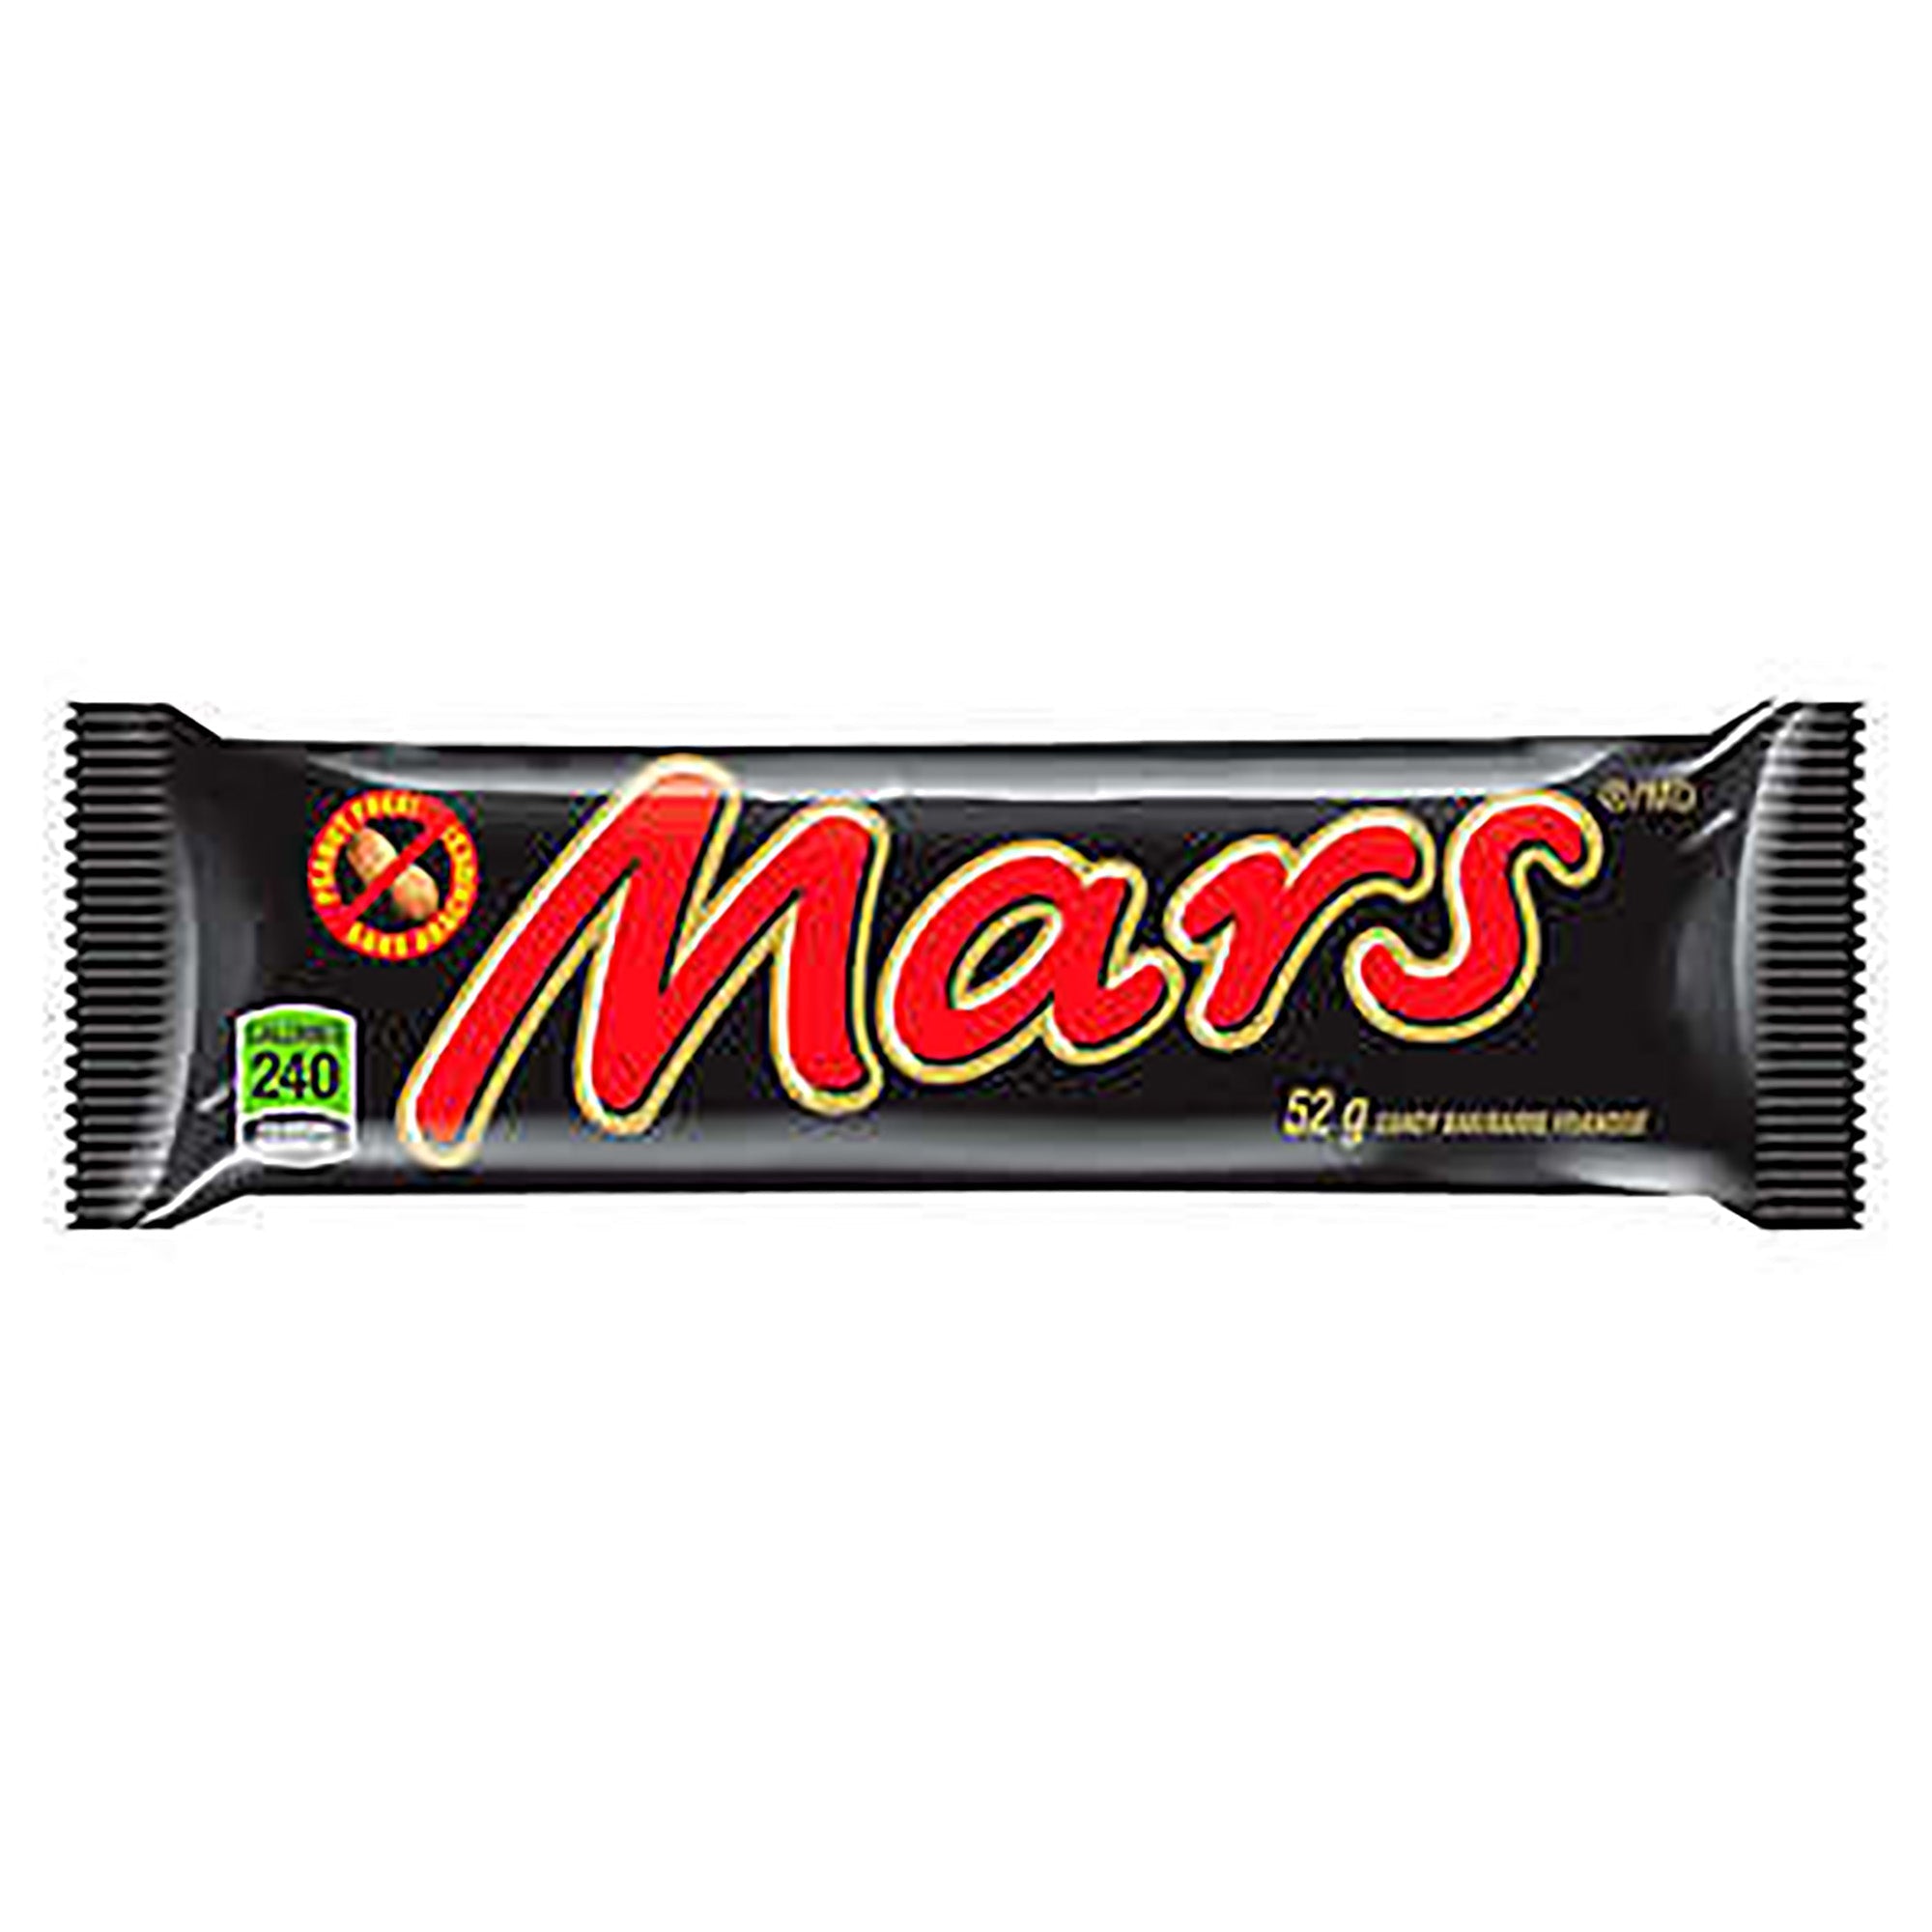 Mars Caramel 52g